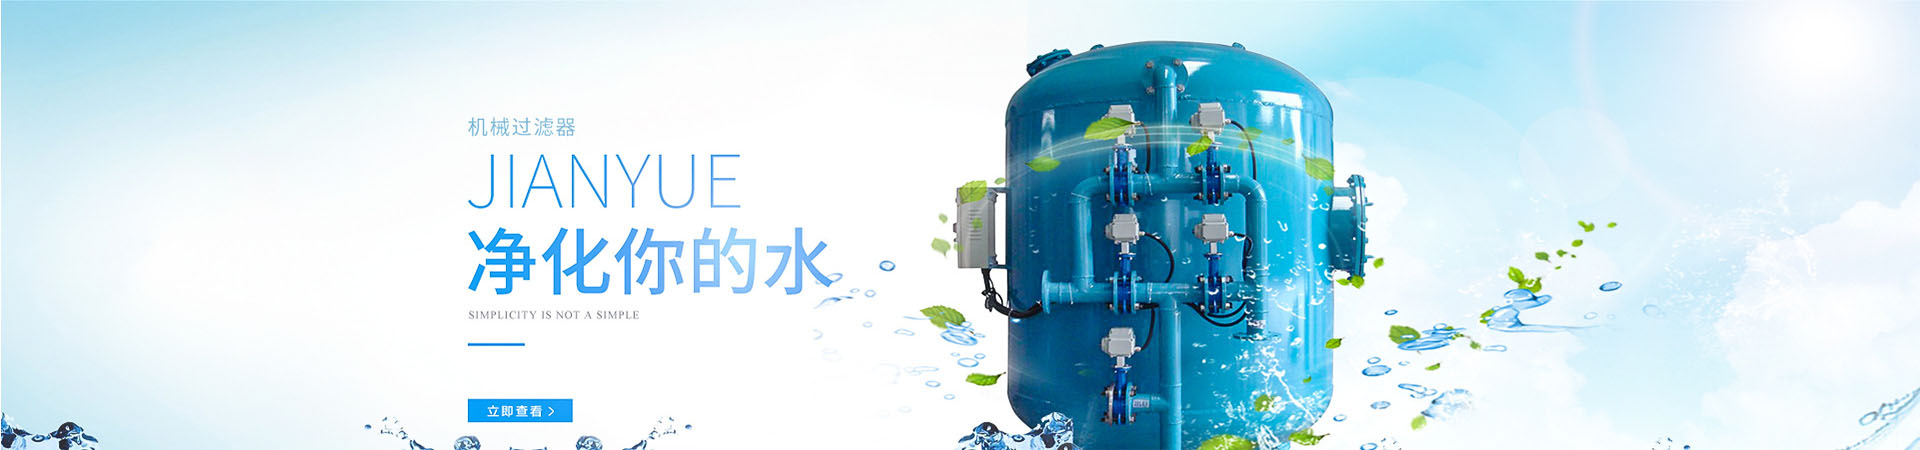 全程综合水处理器、海南本地全程综合水处理器、海南、海南全程综合水处理器